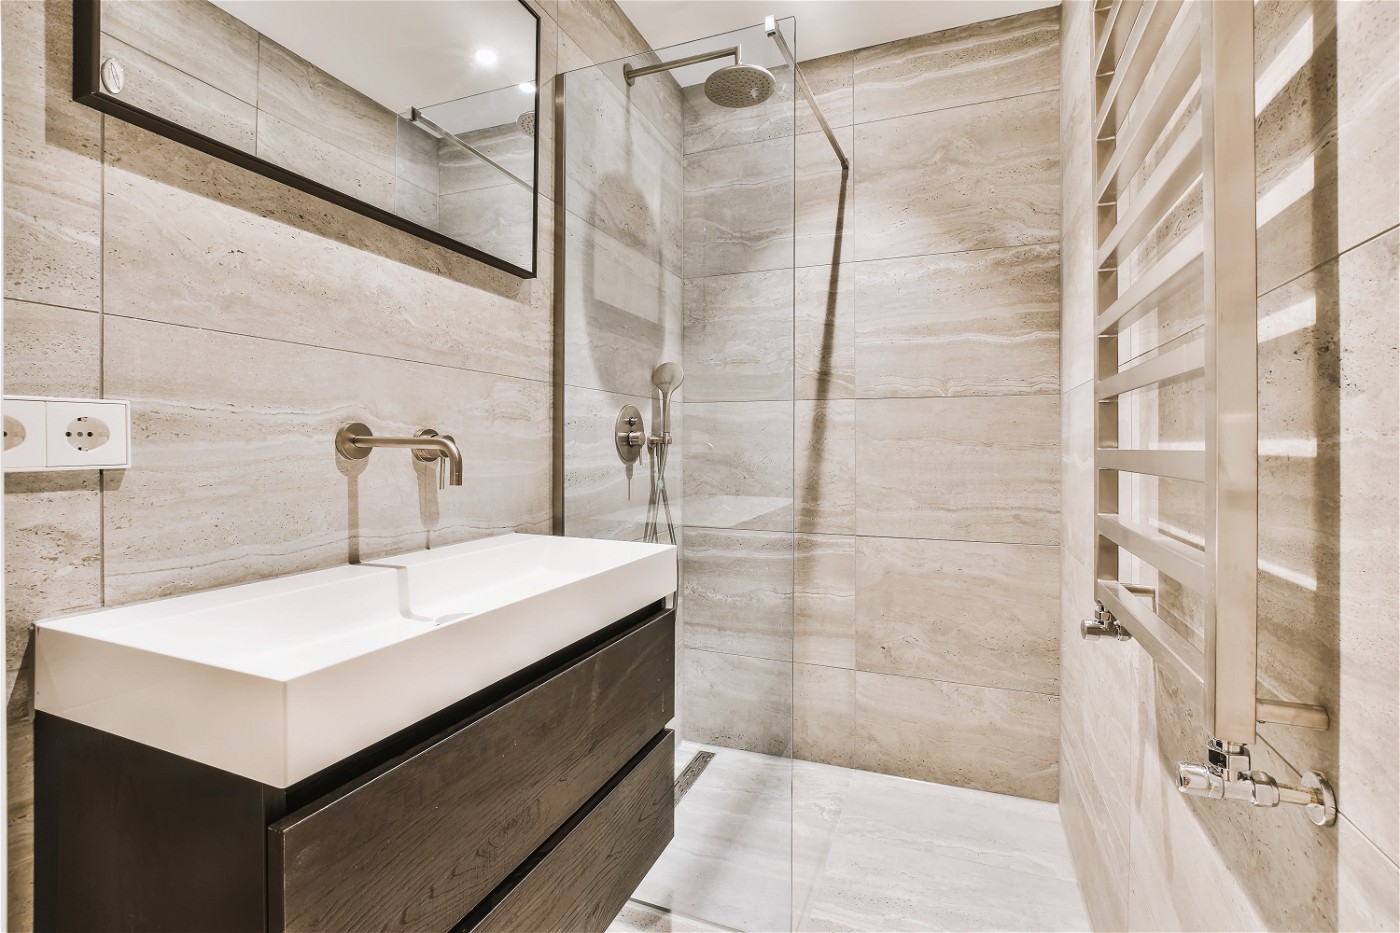 Podtynkowy system prysznicowy - funkcjonalność i nowoczesny design